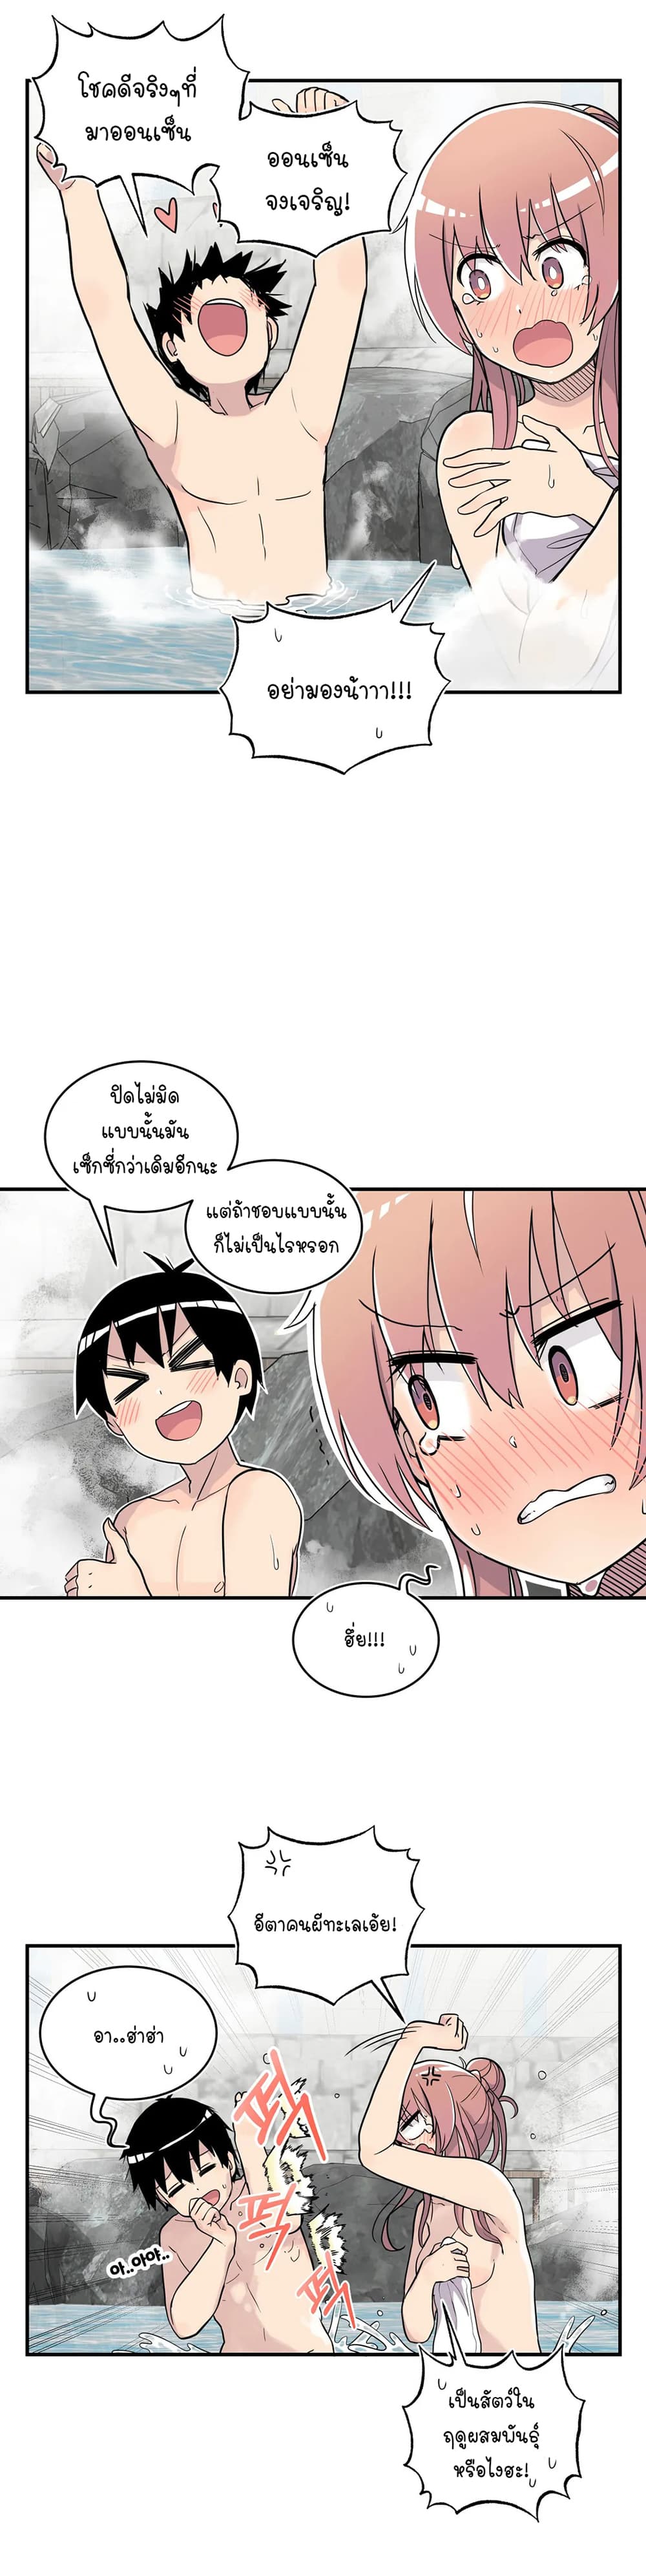 Erotic Manga Club ชมรมการ์ตูนอีโรติก 27 (12)